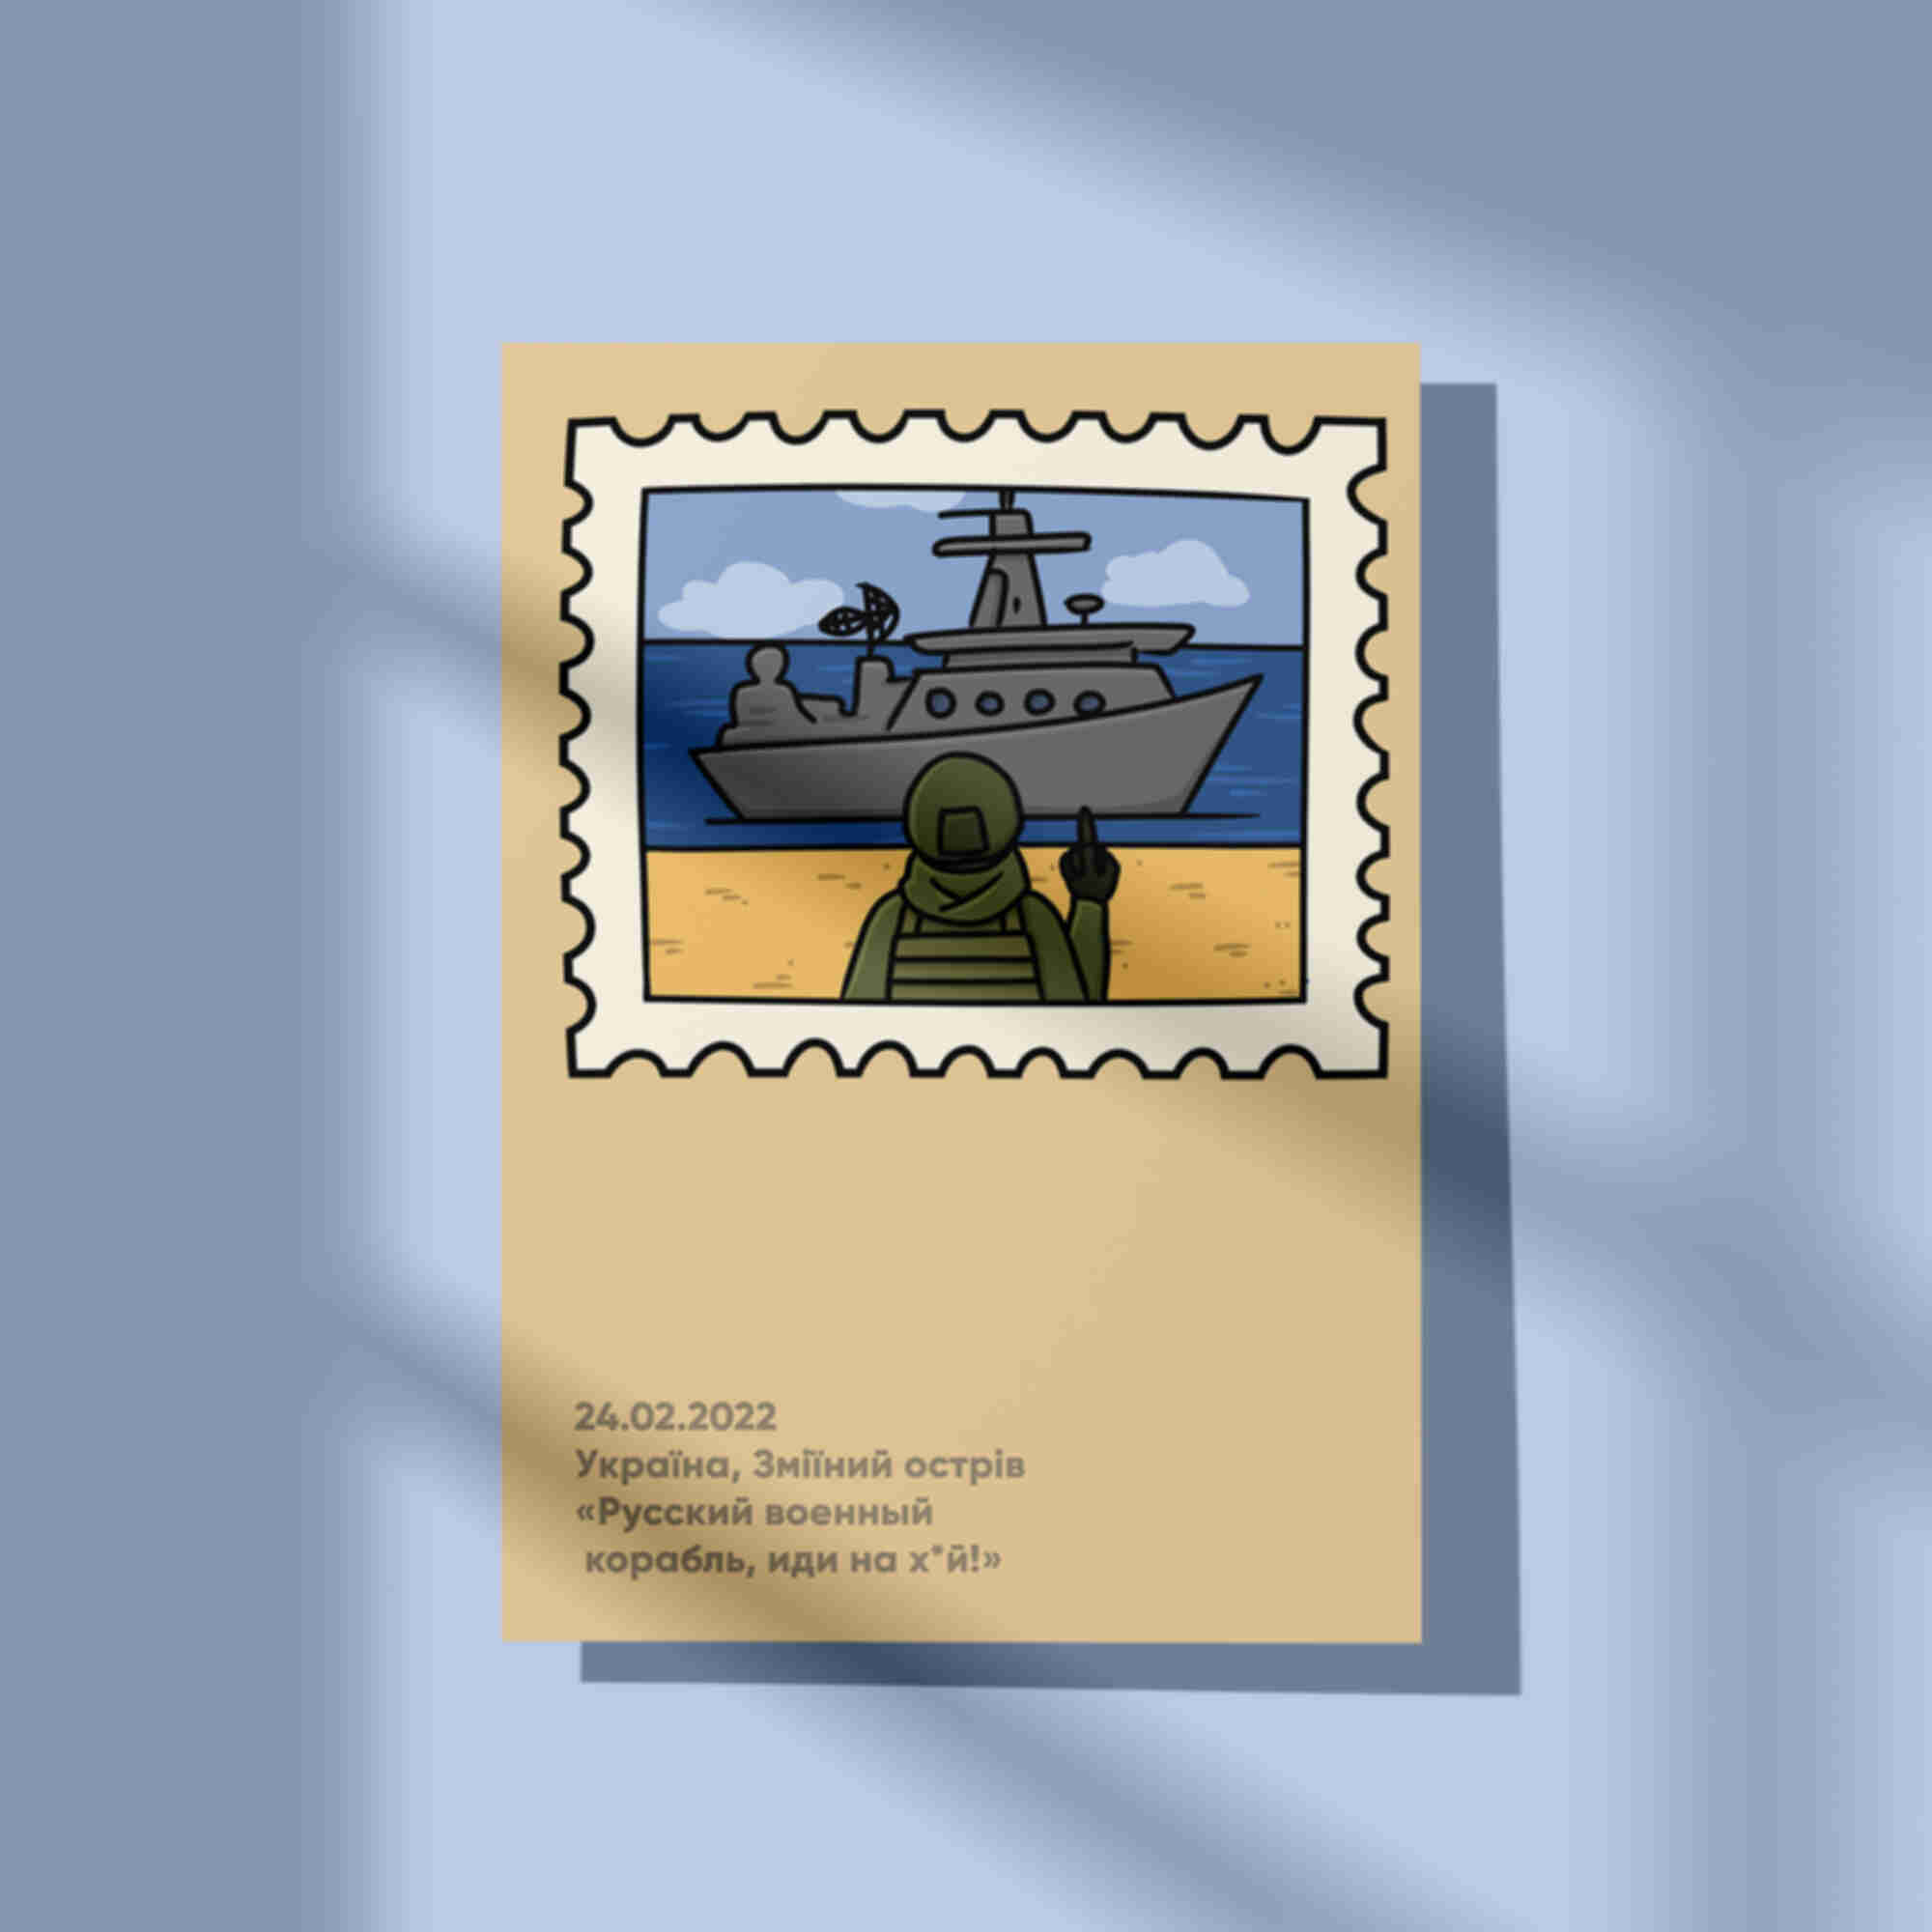 Открытка / постер «Воєнний корабль» • Змеиный • Украина • Патриотические сувениры. Фото №16